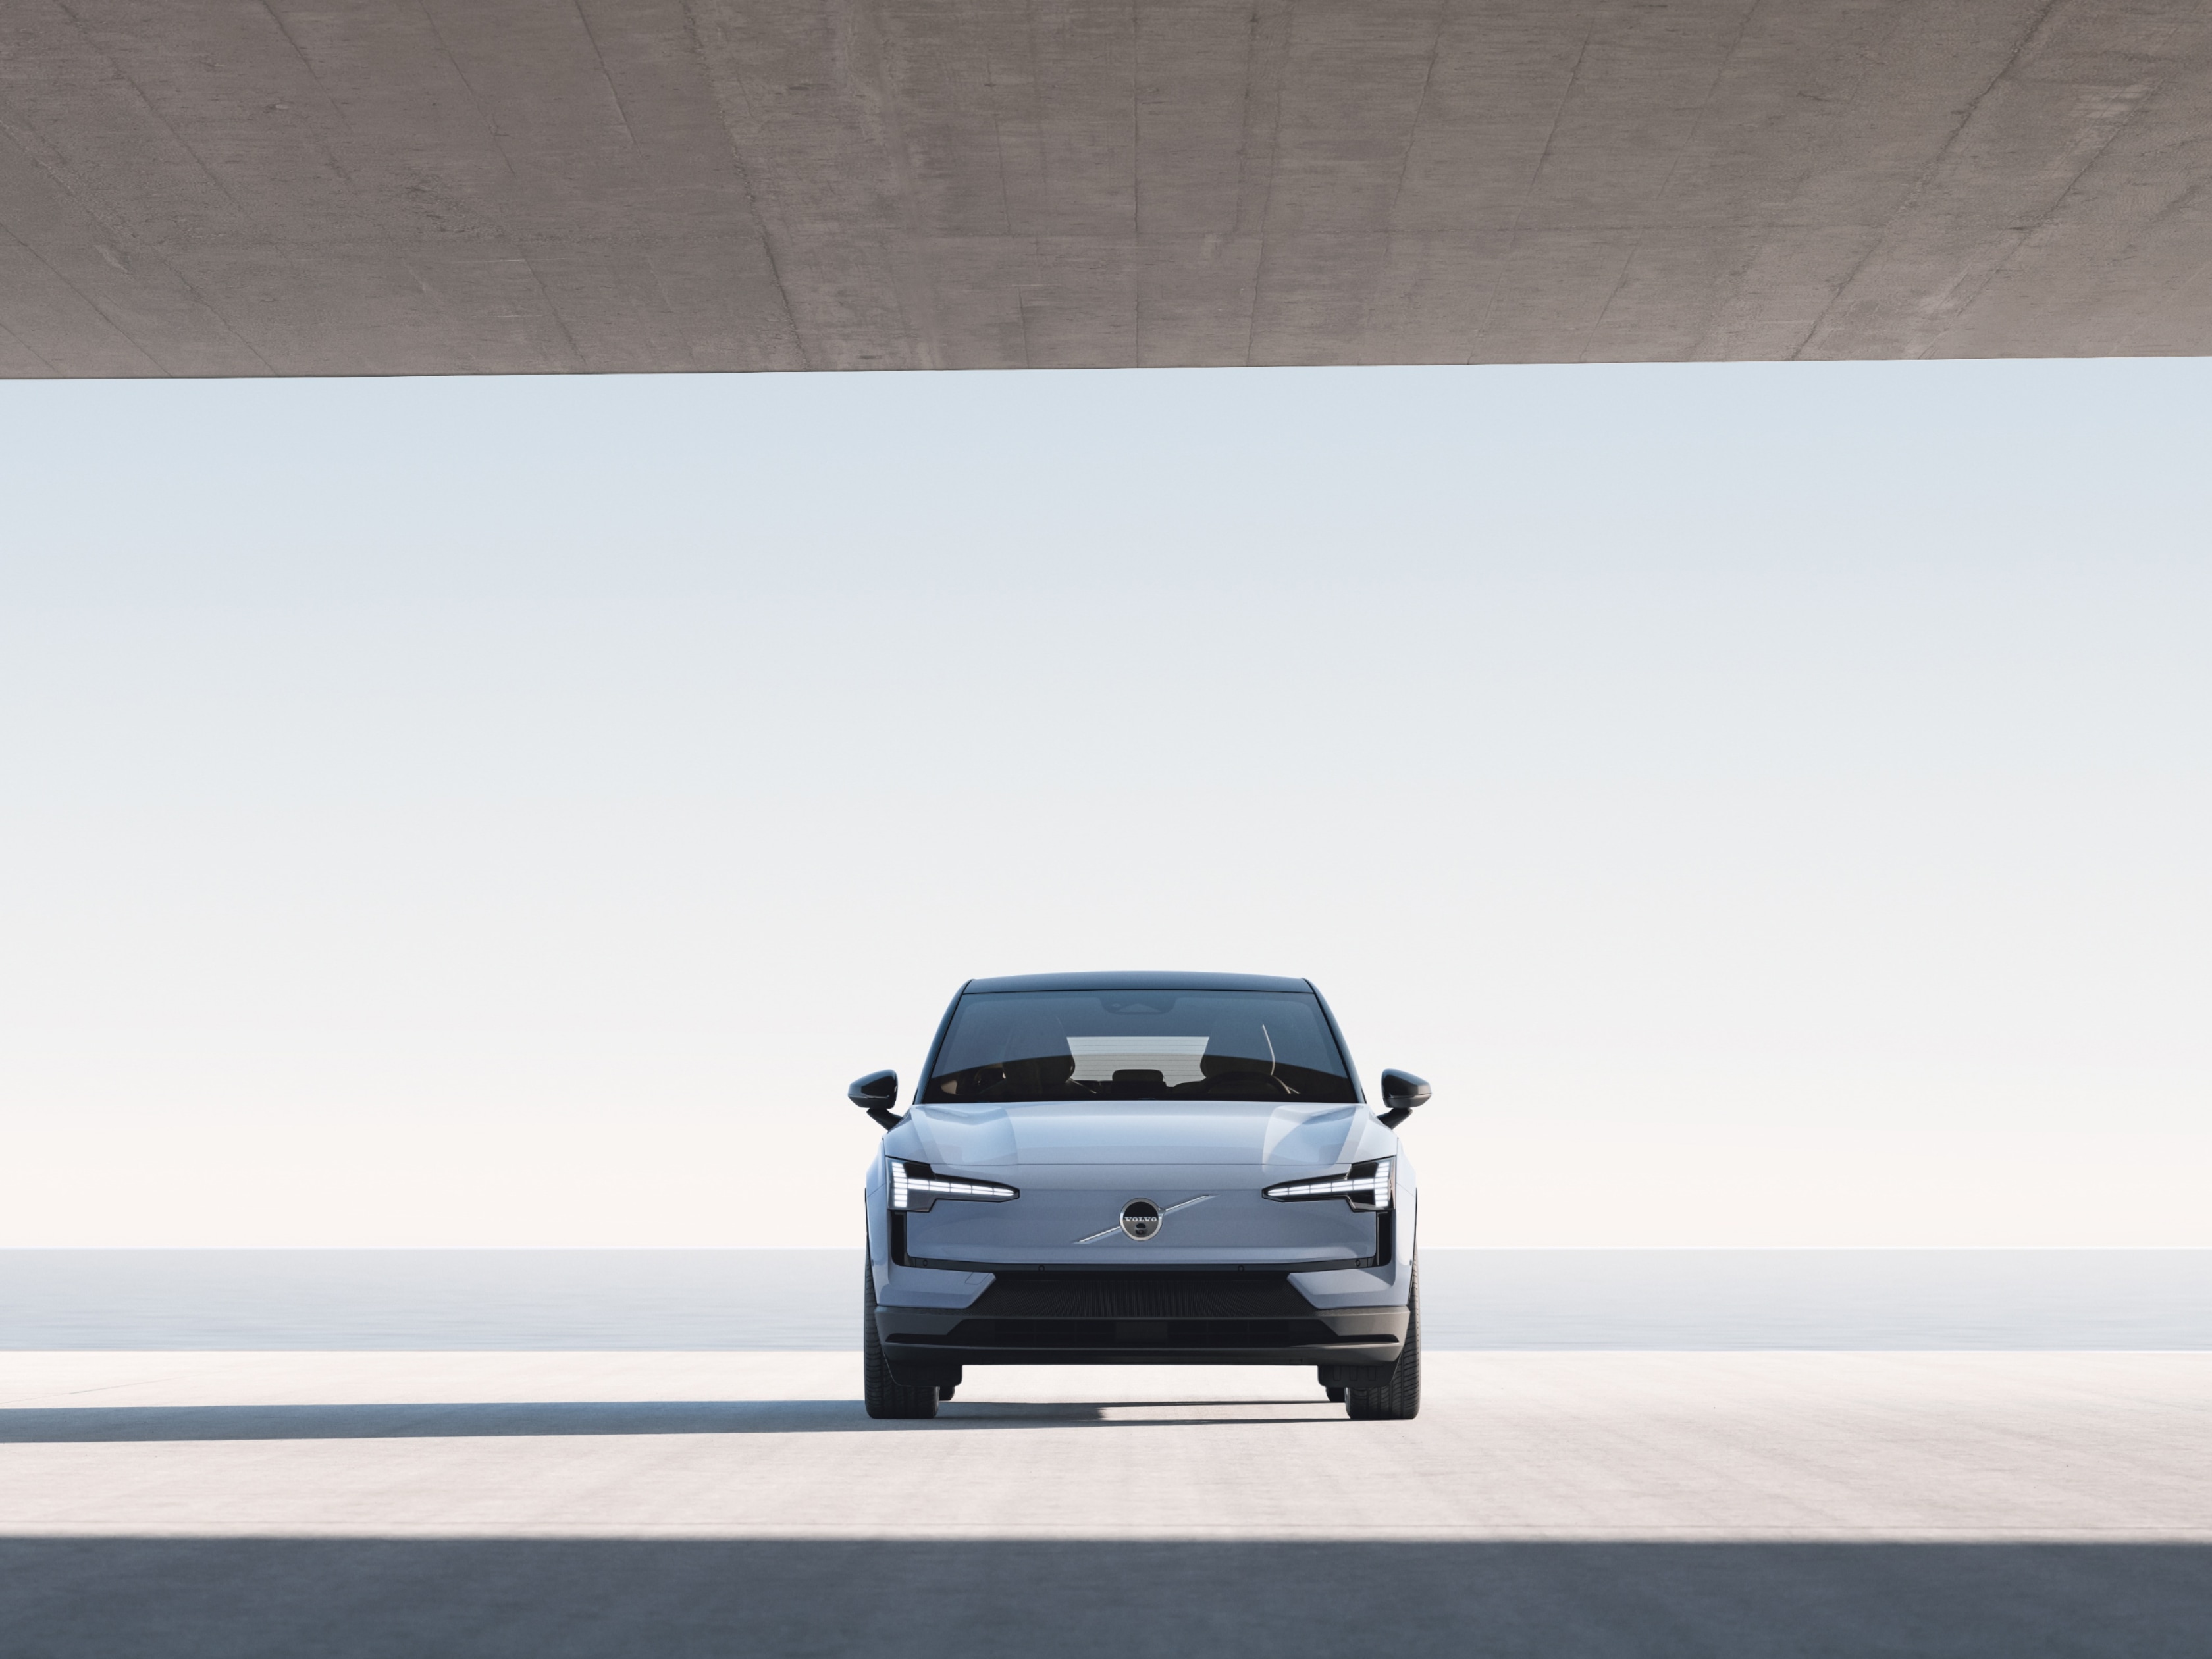 Широкоъгълно изображение на Volvo EX30, паркирано в голяма бетонна конструкция, надвиснала над вода.